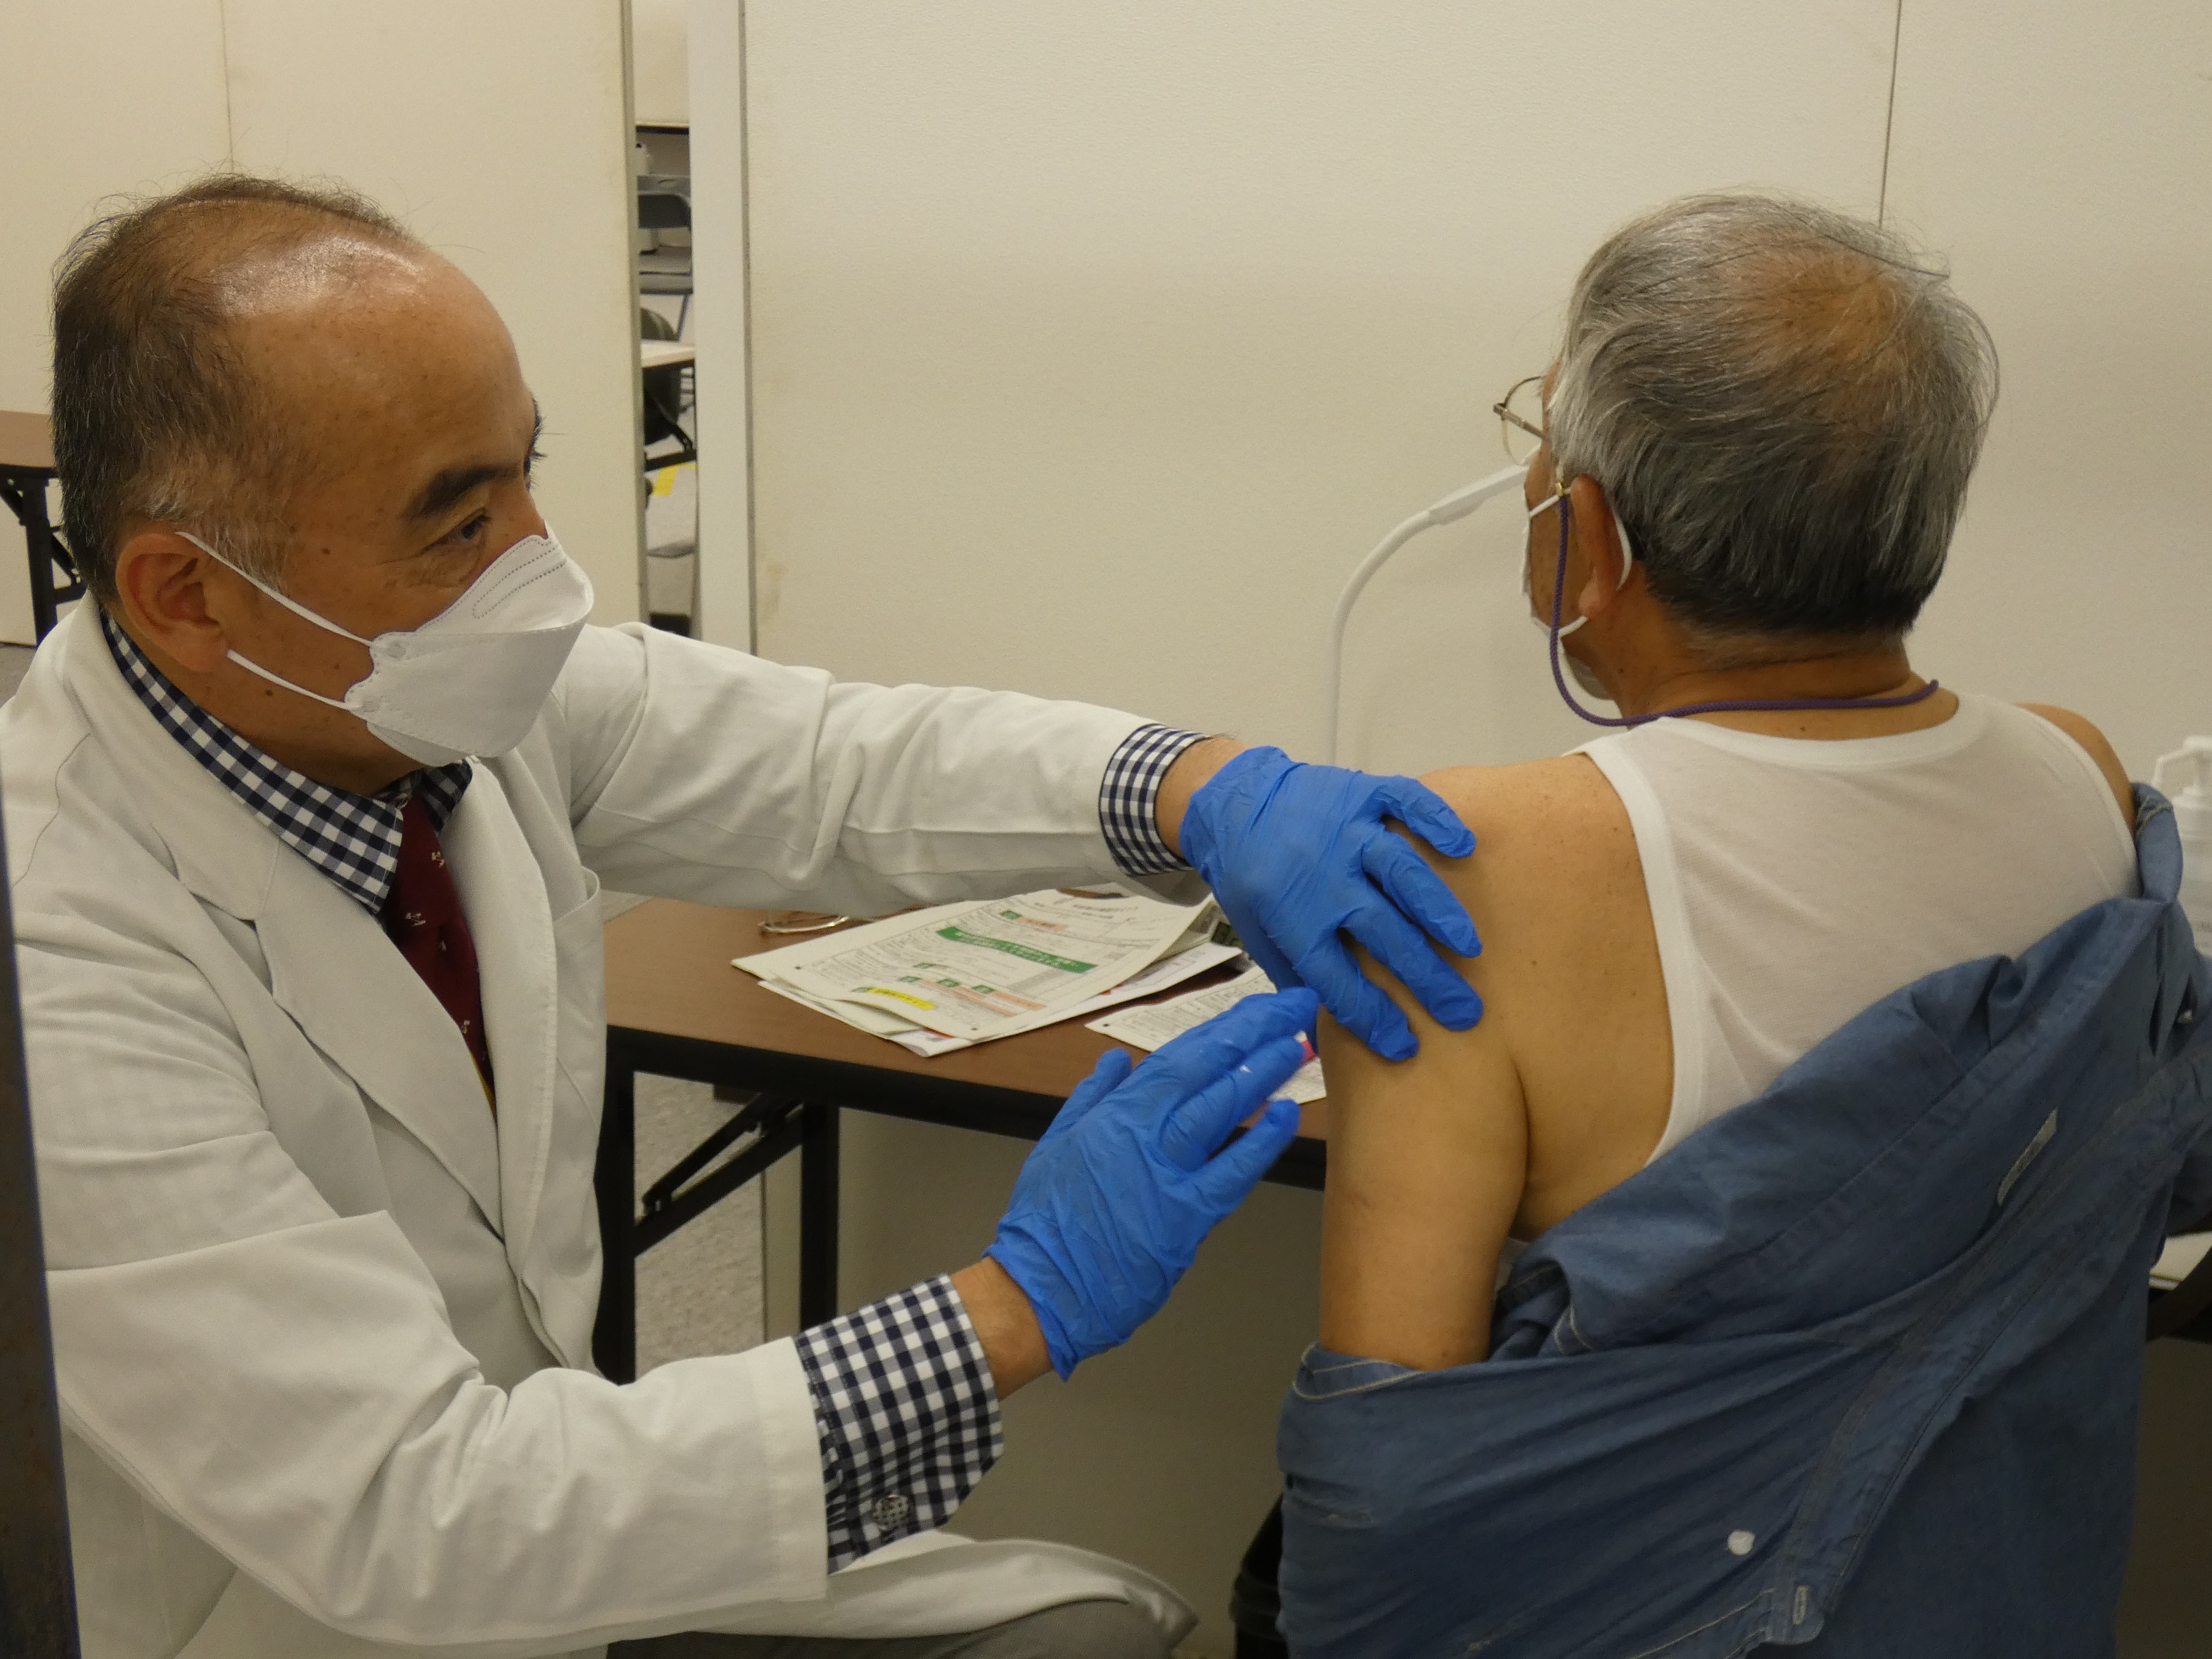 神戸市 大規模ワクチン接種会場でシミュレーション訓練 5月25日から独自運用開始 ラジトピ ラジオ関西トピックス